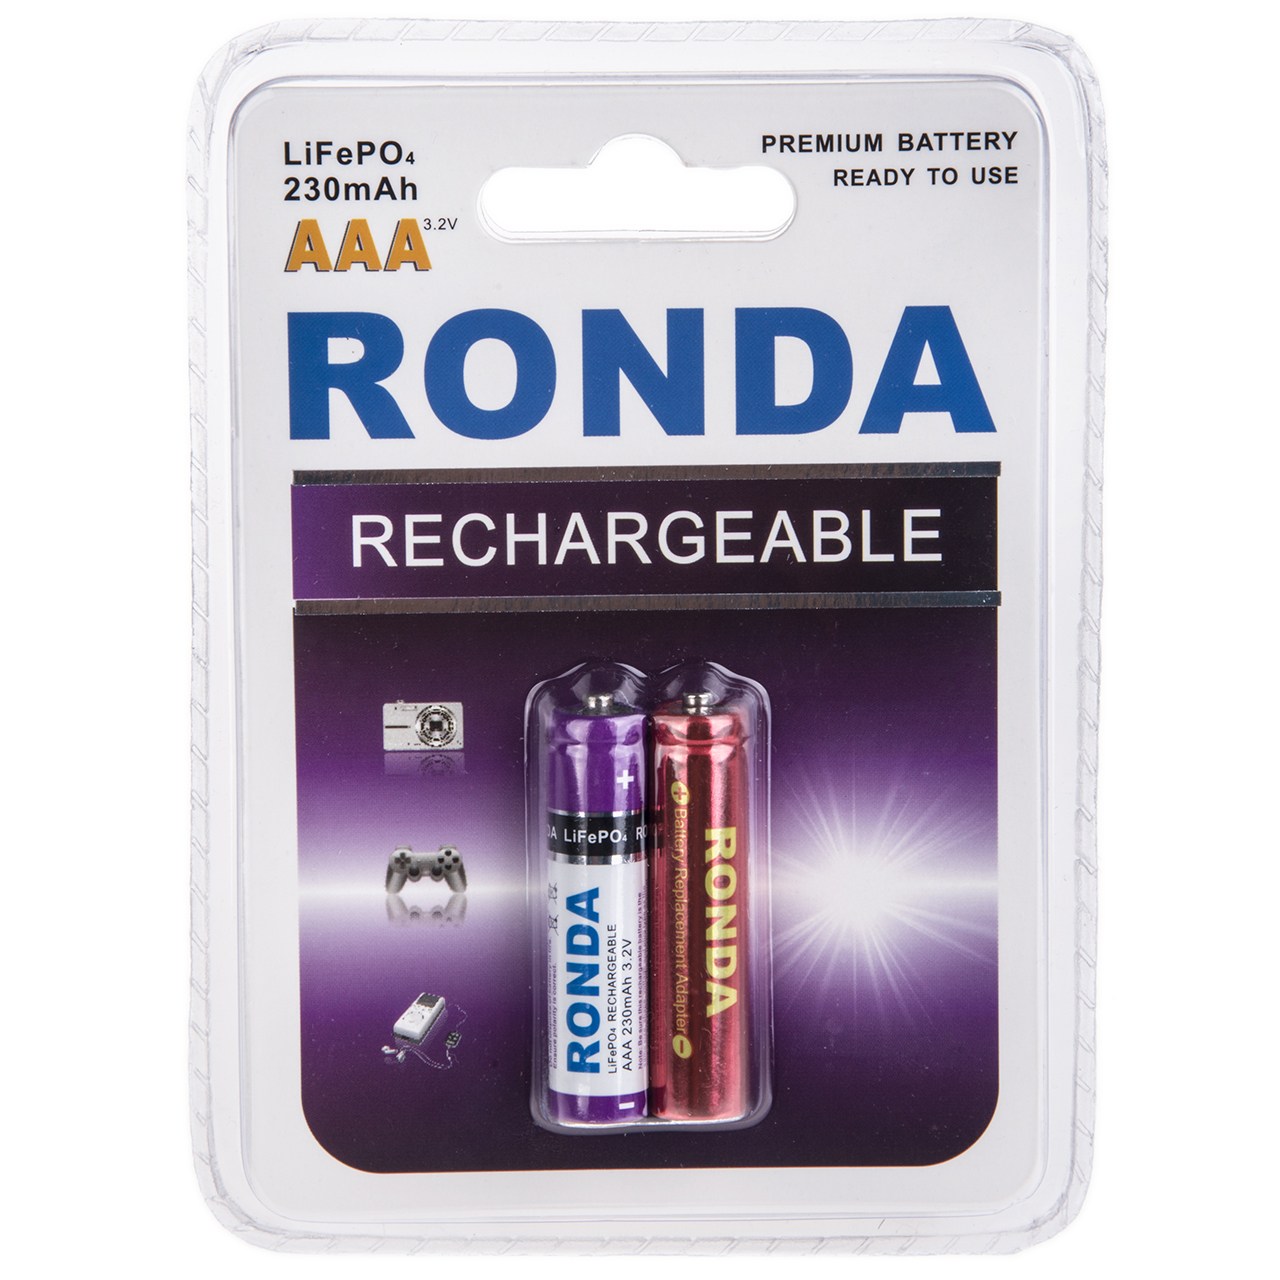 باتری نیم قلمی قابل شارژ روندا با ظرفیت 230 میلی آمپر ساعت بسته ی 2 عددی